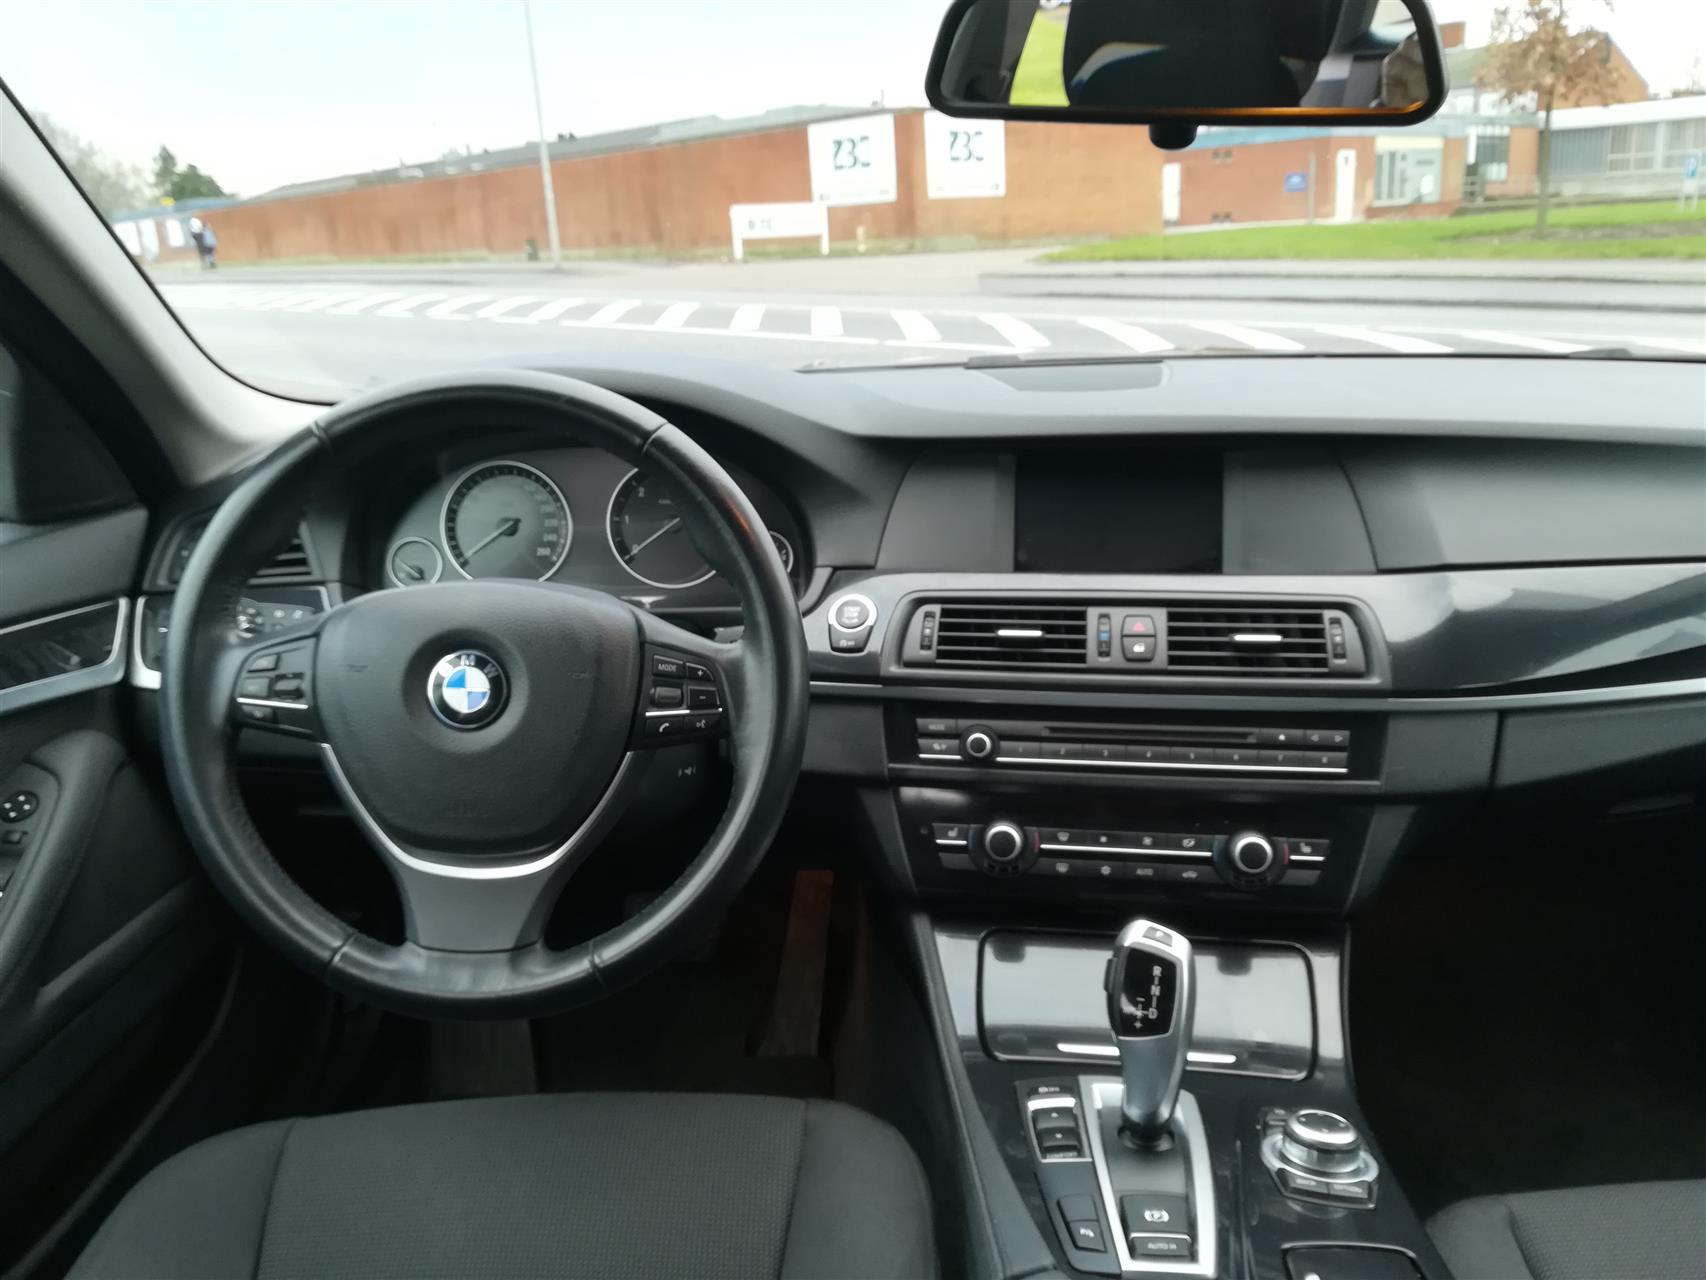 Billede af BMW 520d Touring 2,0 D 184HK Stc 8g Aut.